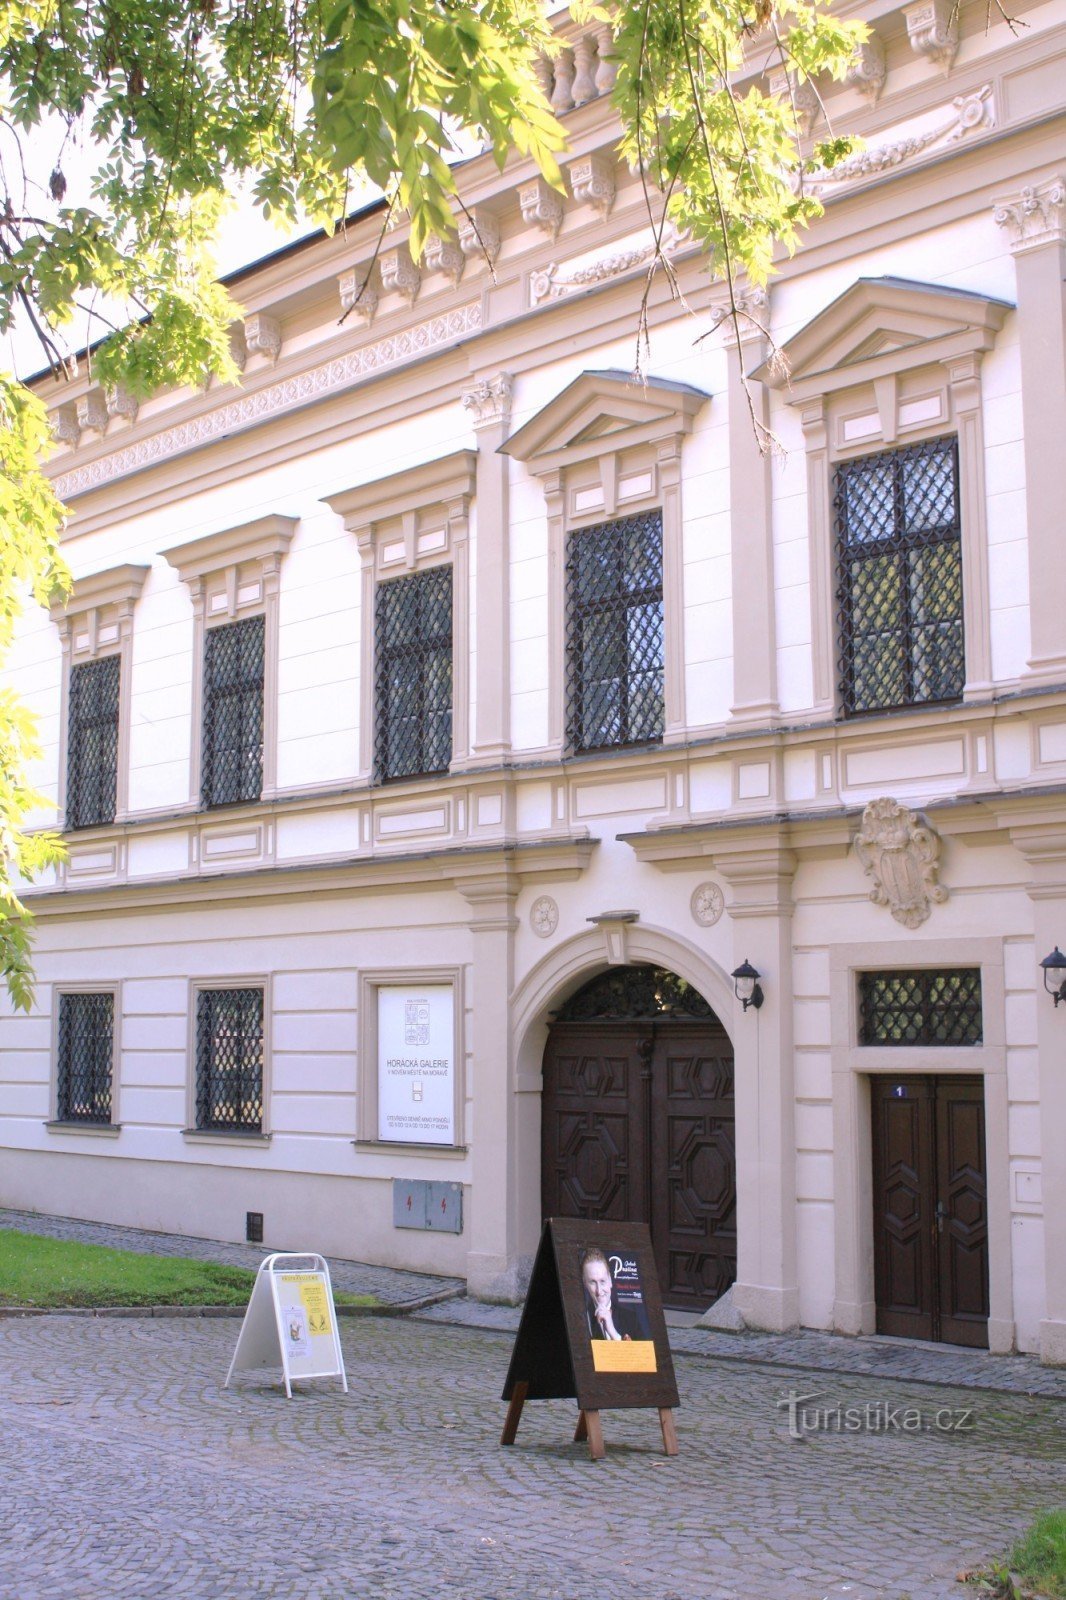 Eingangsteil des Schlosses (heute Horácká-Galerie)